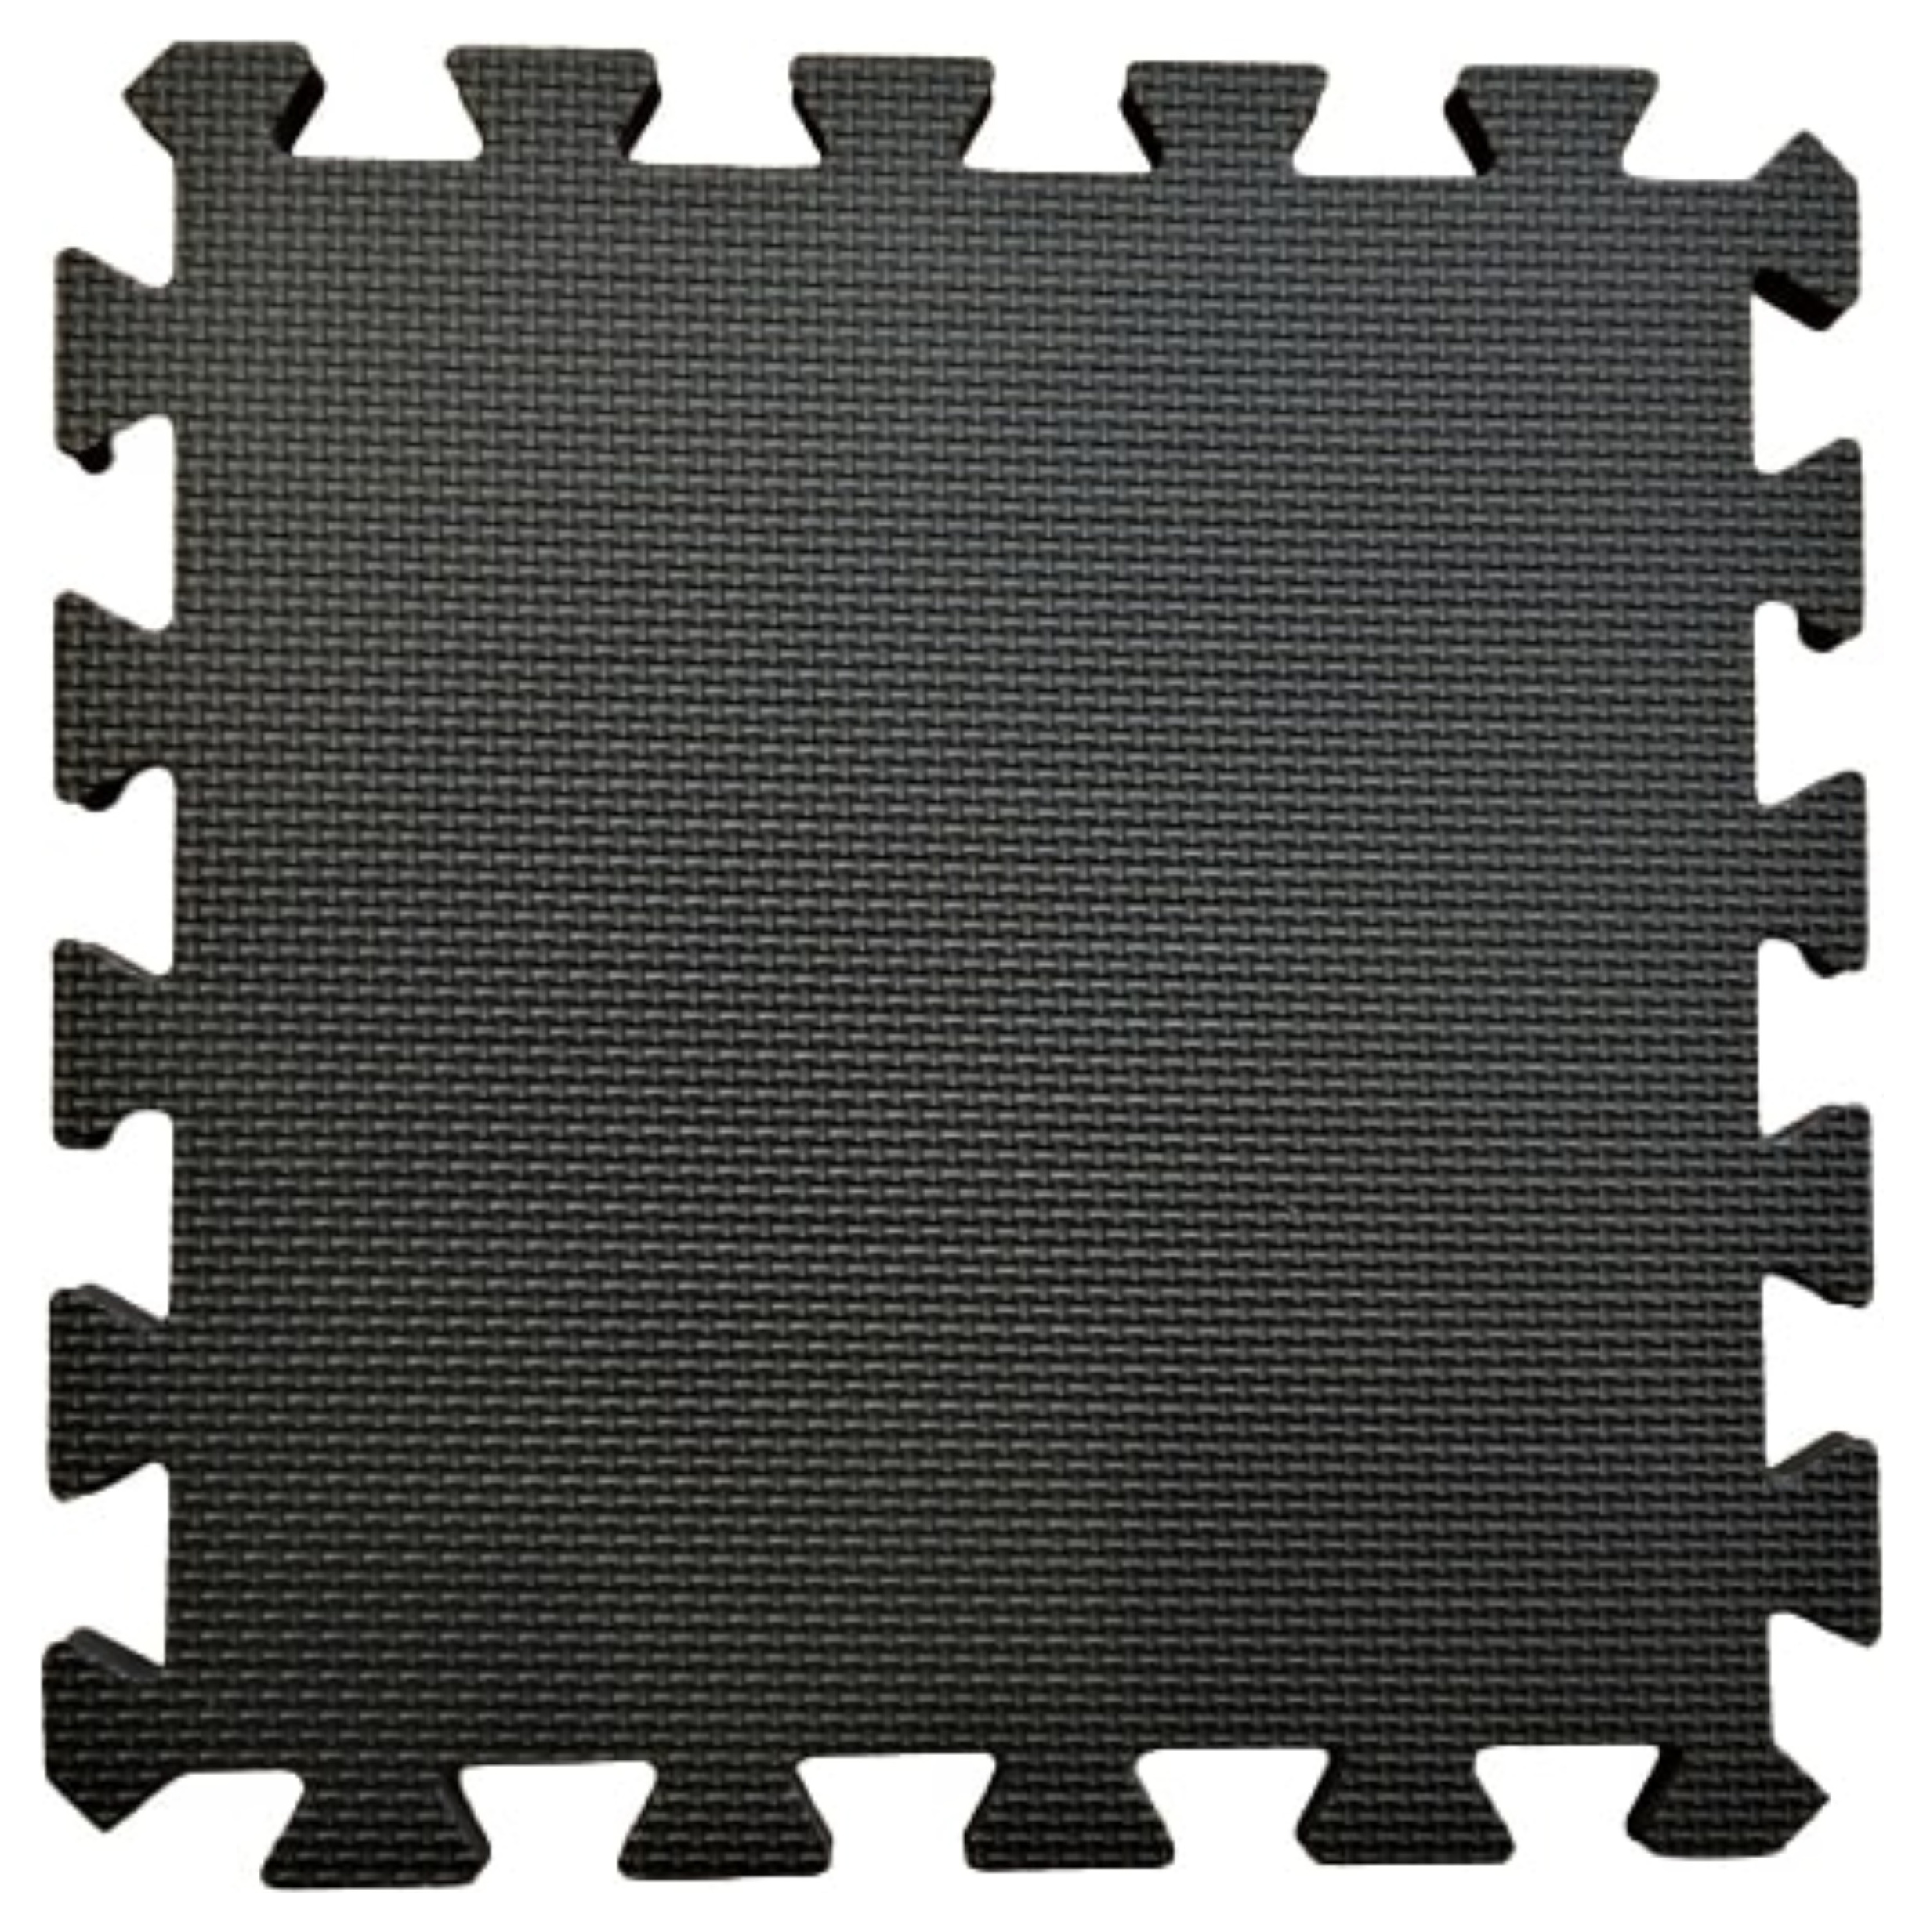 Warm Floor Black Interlocking Floor Tiles for Garden Buildings - 20 x 10ft